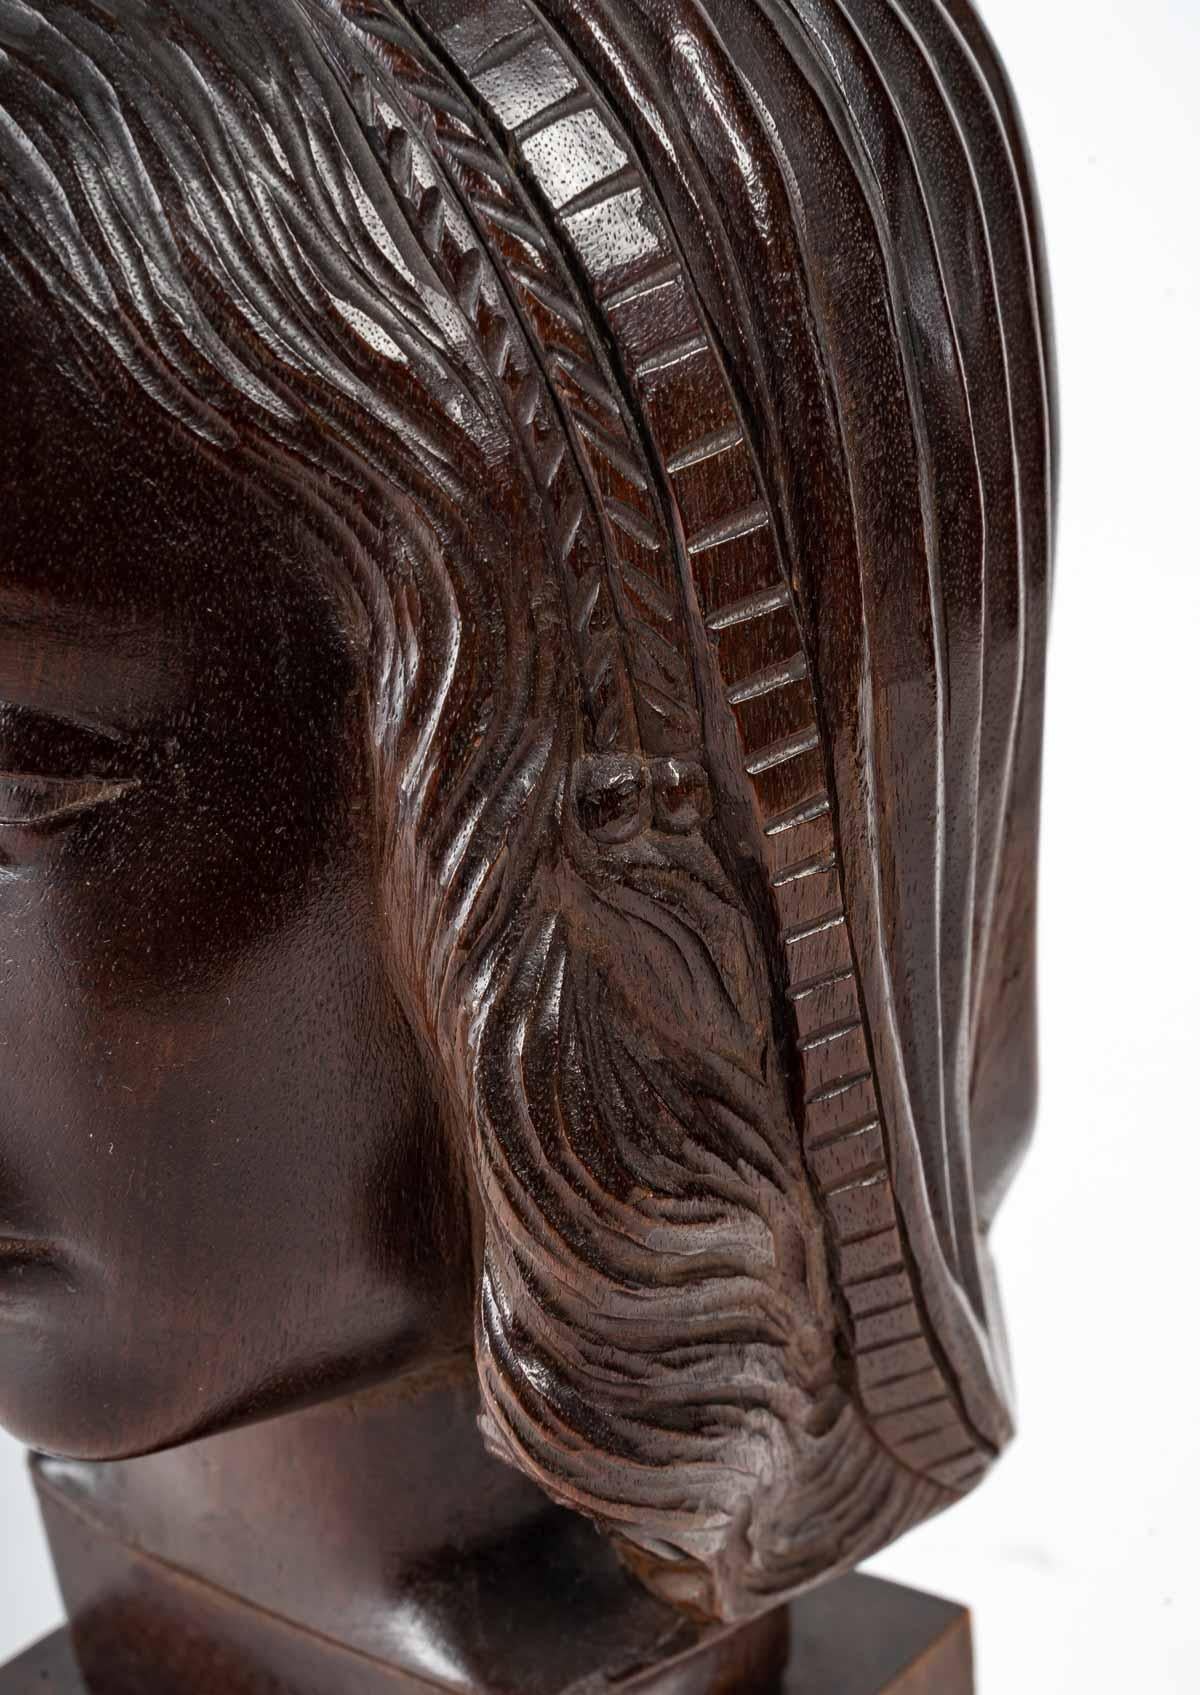 Kopf einer Frau, Holzskulptur, Art Deco, 1930
Geschnitzte Holzskulptur, im Geschmack der Renaissance, schöne Qualität der Arbeit, 1930, Art Deco Stil.
H: 36 cm, B: 18 cm, T: 17 cm.
 